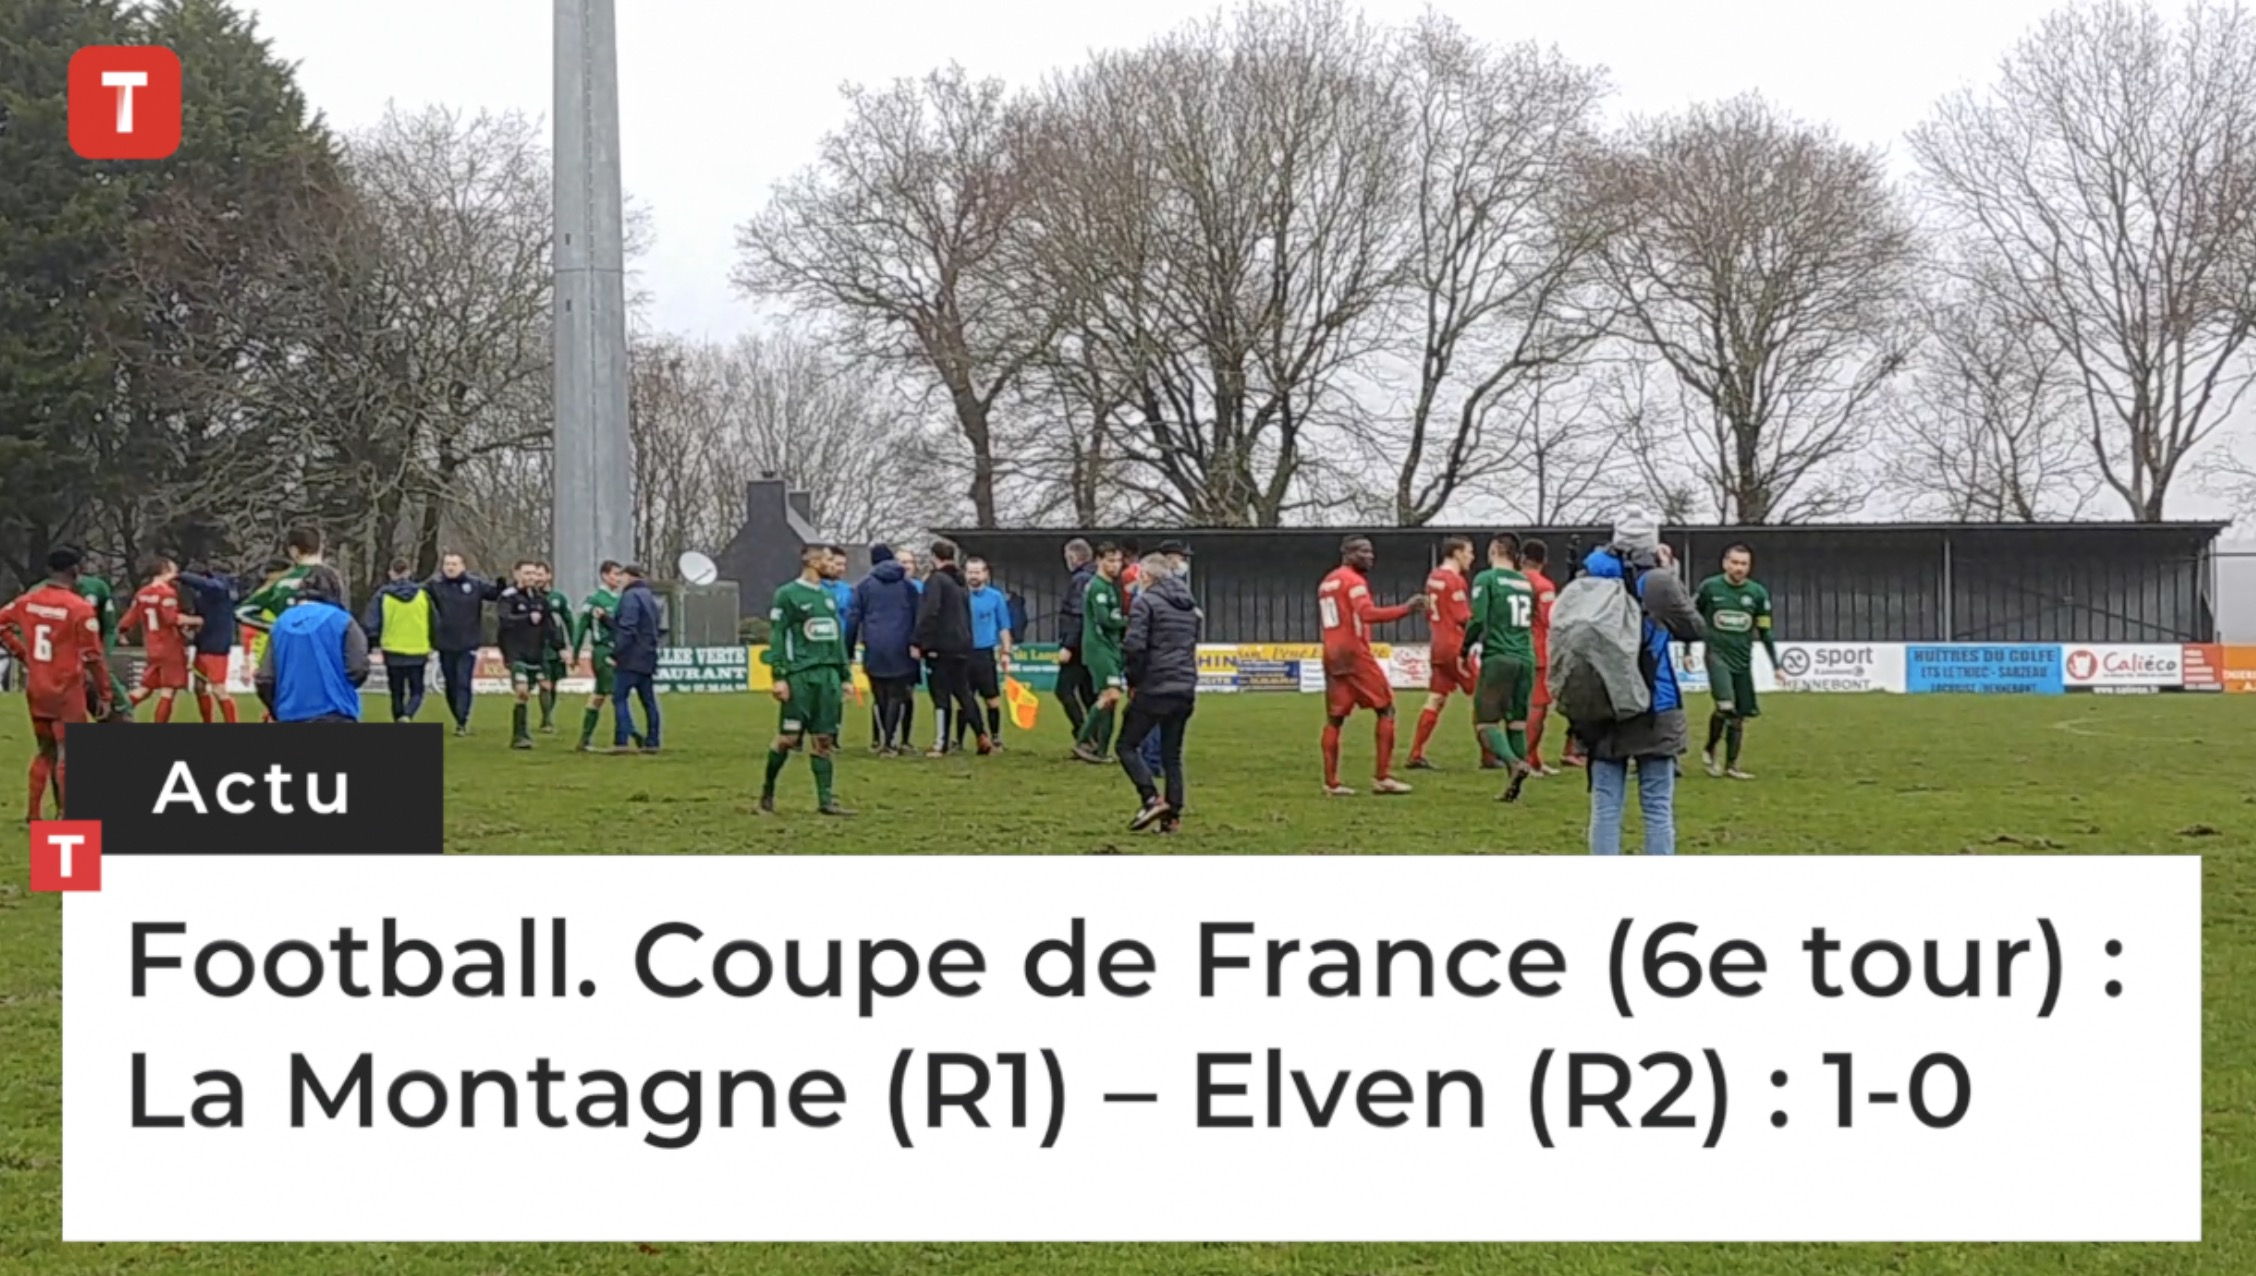 Football. Coupe de France (6e tour) : La Montagne (R1) – Elven (R2) : 1-0 (Le Télégramme)